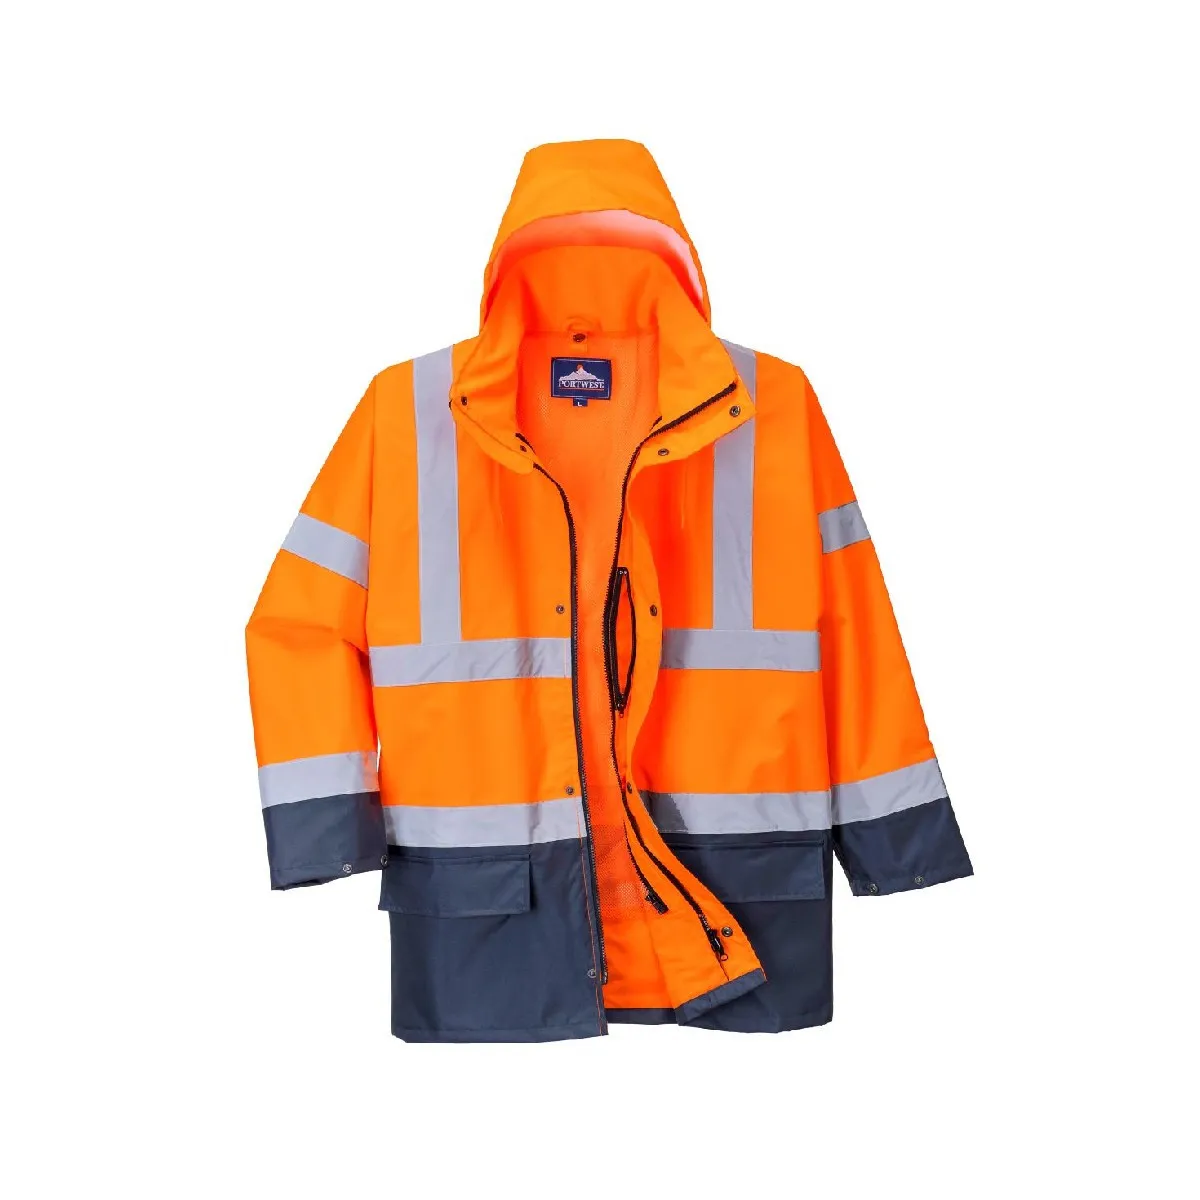 Visokovidljiva jakna S766 5 u 1 narandžasto-teget - Portwest 